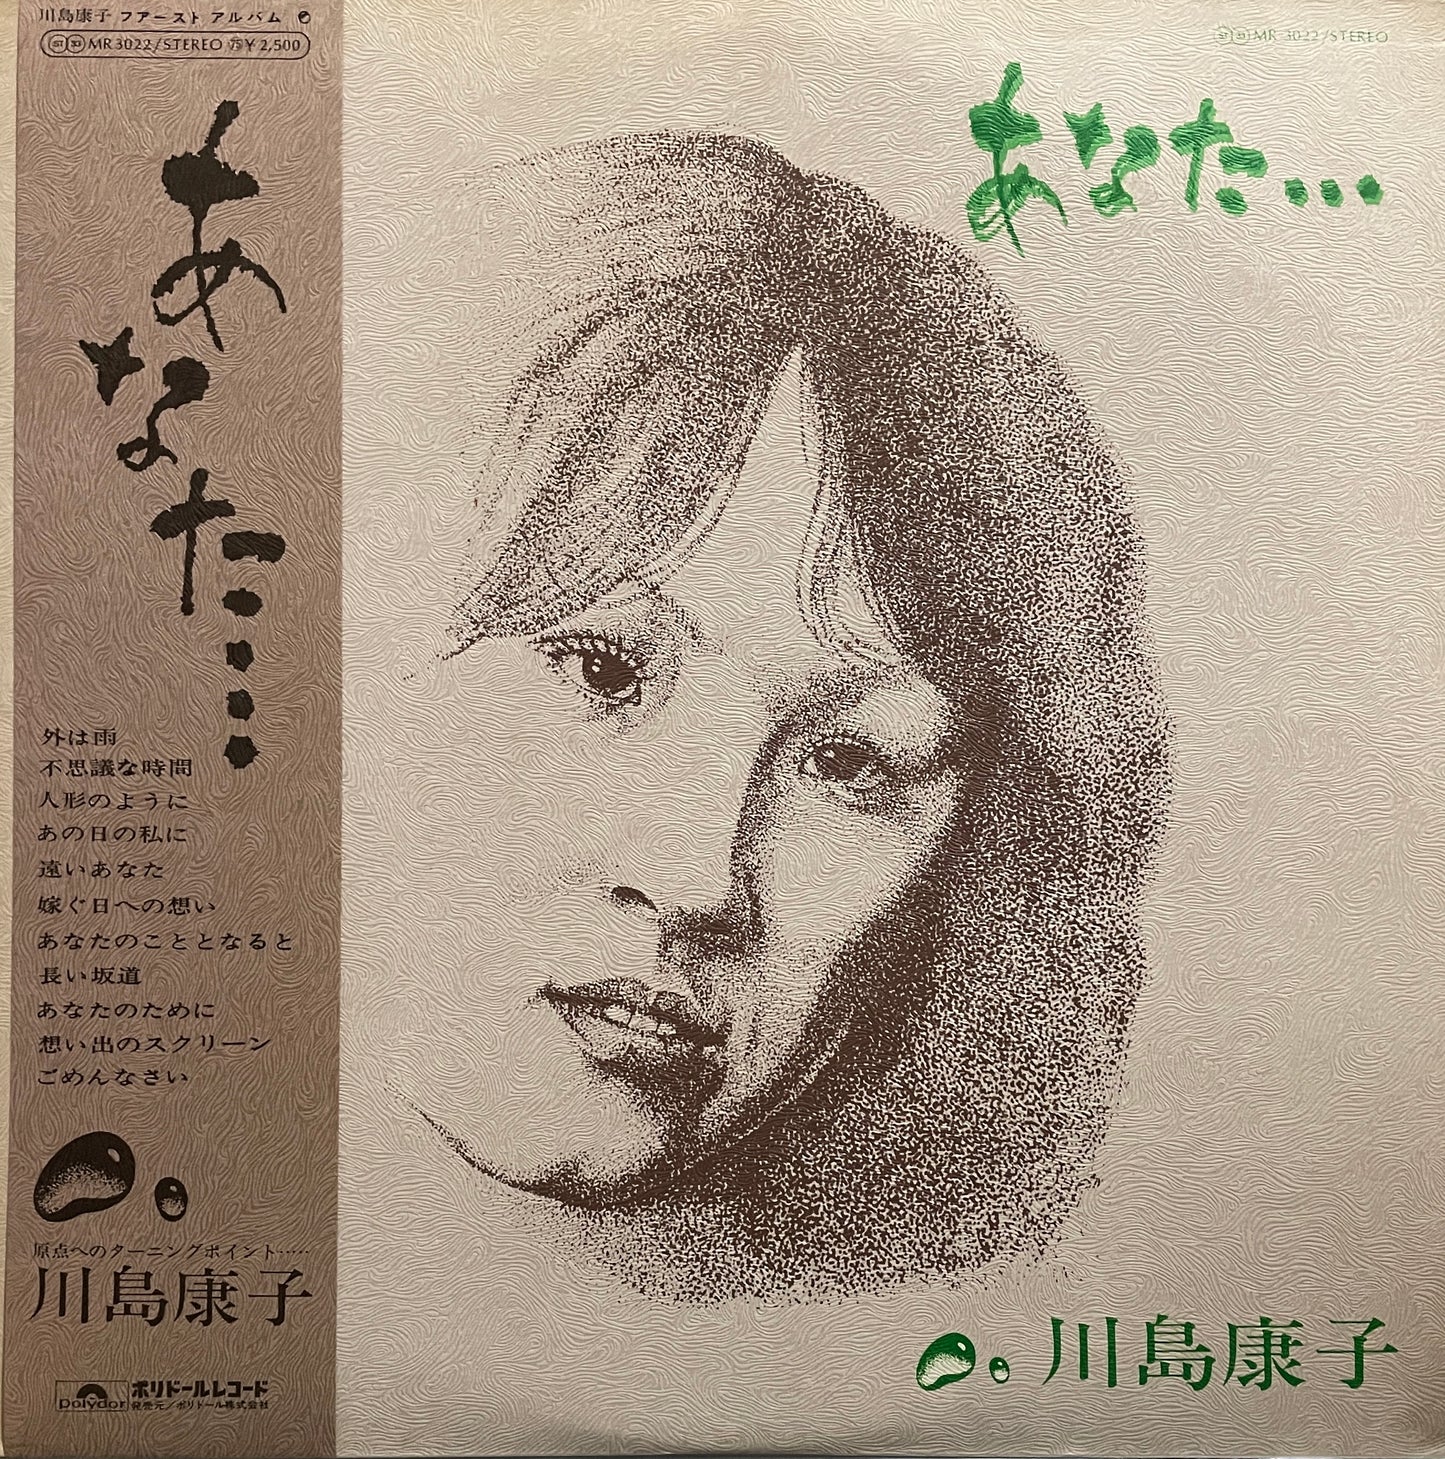 川島康子 "あなた…" (1976)